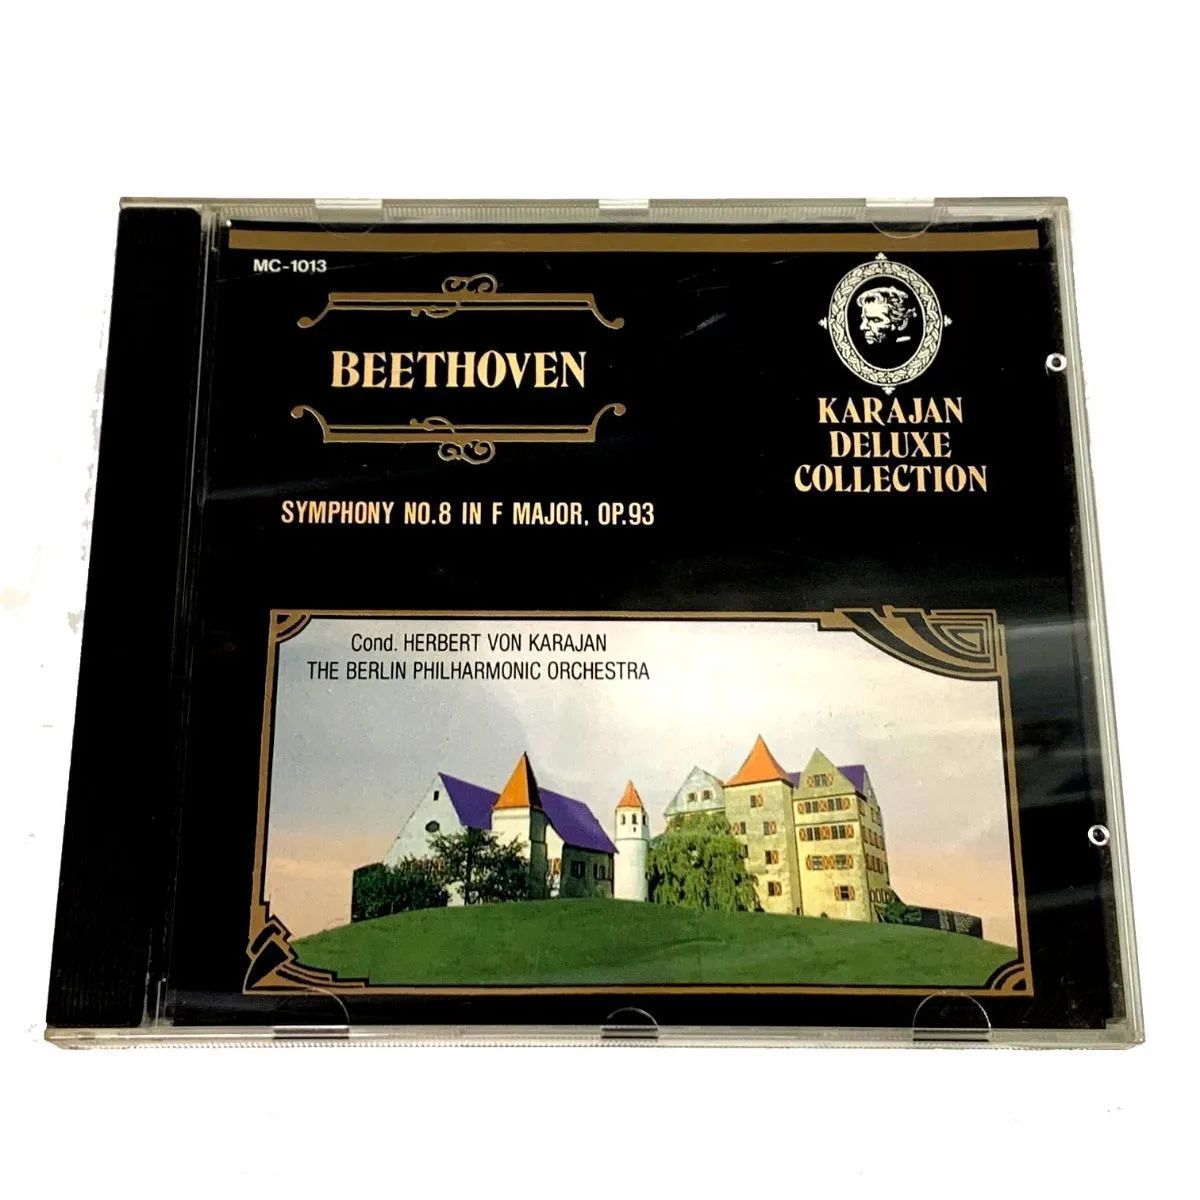 CD
ベートーベン
カラヤン デラックス コレクション